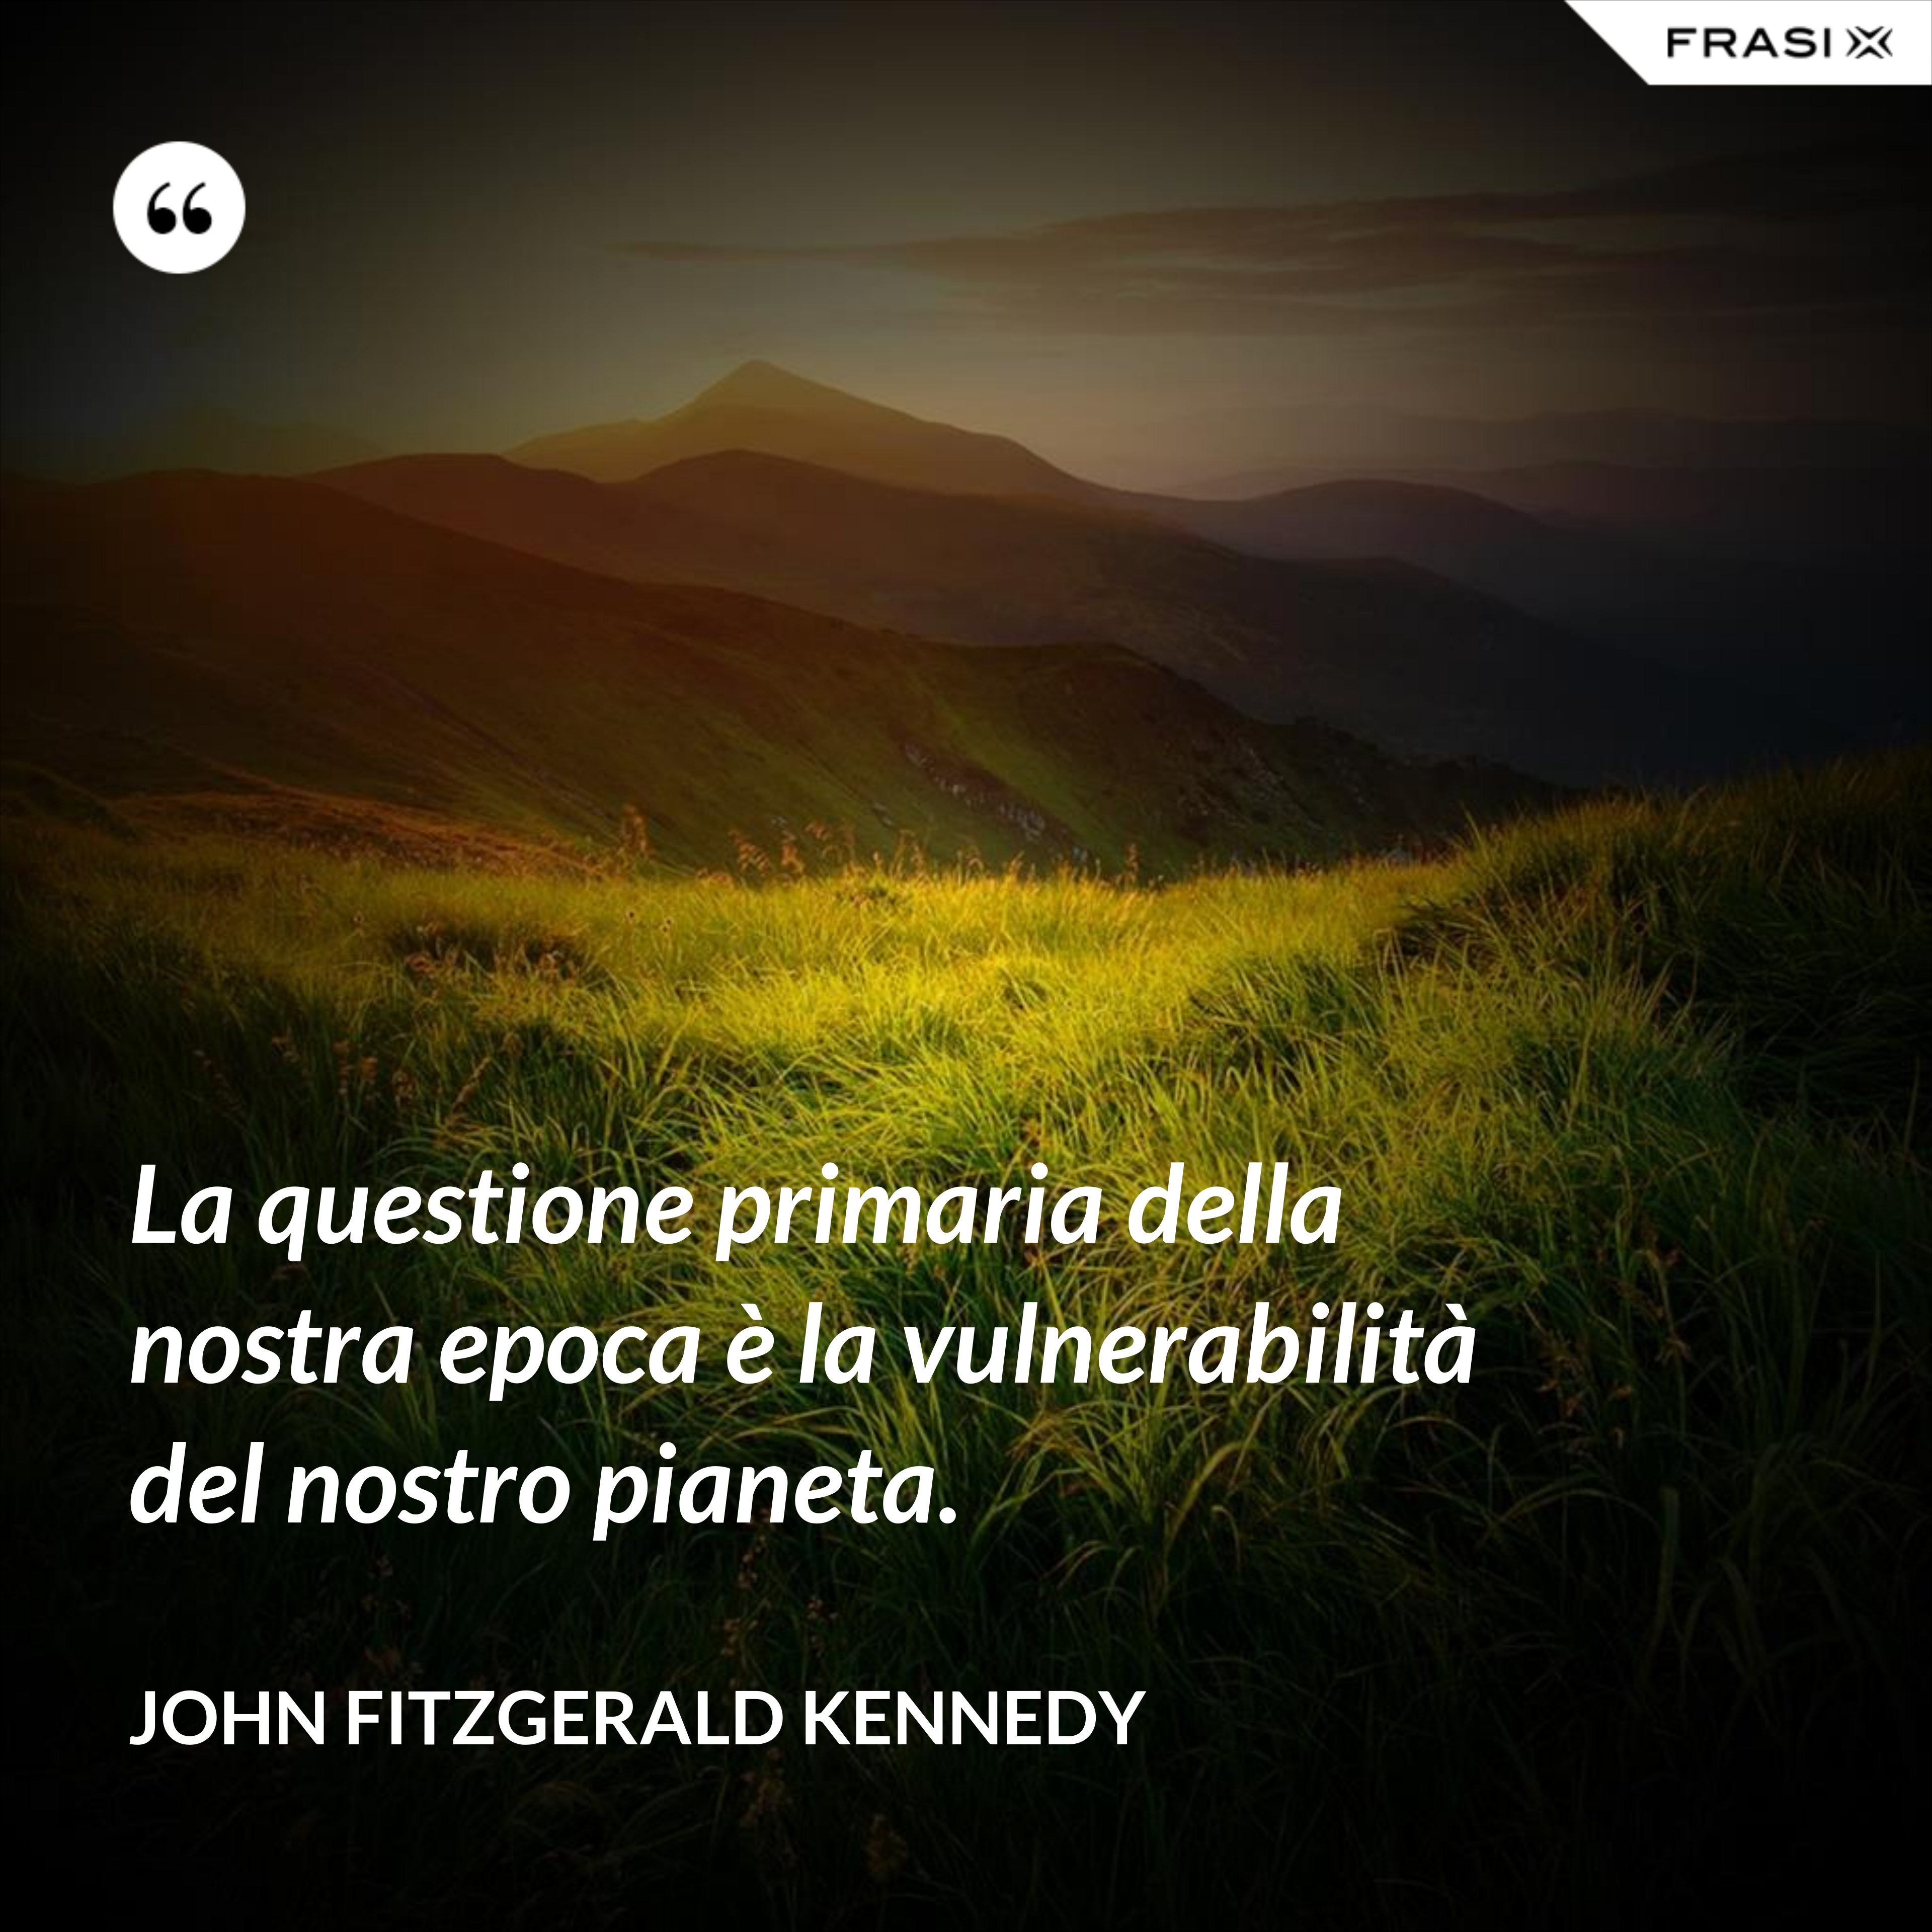 La questione primaria della nostra epoca è la vulnerabilità del nostro pianeta. - John Fitzgerald Kennedy